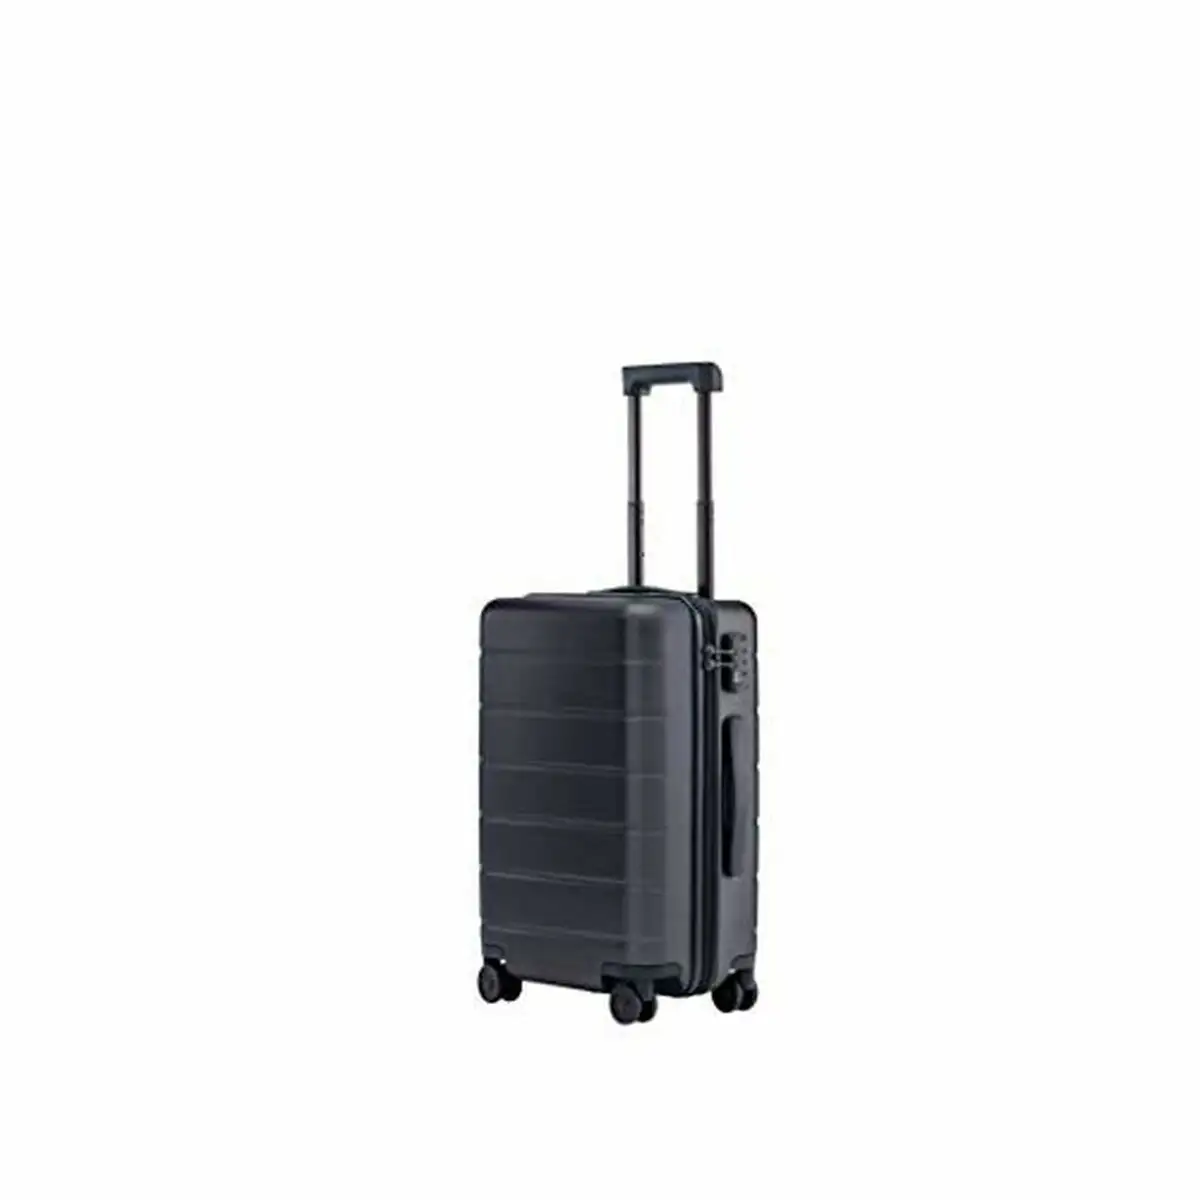 Valise xiaomi luggage classic 20 _4022. DIAYTAR SENEGAL - Votre Destination pour un Shopping Réfléchi. Découvrez notre gamme variée et choisissez des produits qui correspondent à vos valeurs et à votre style de vie.